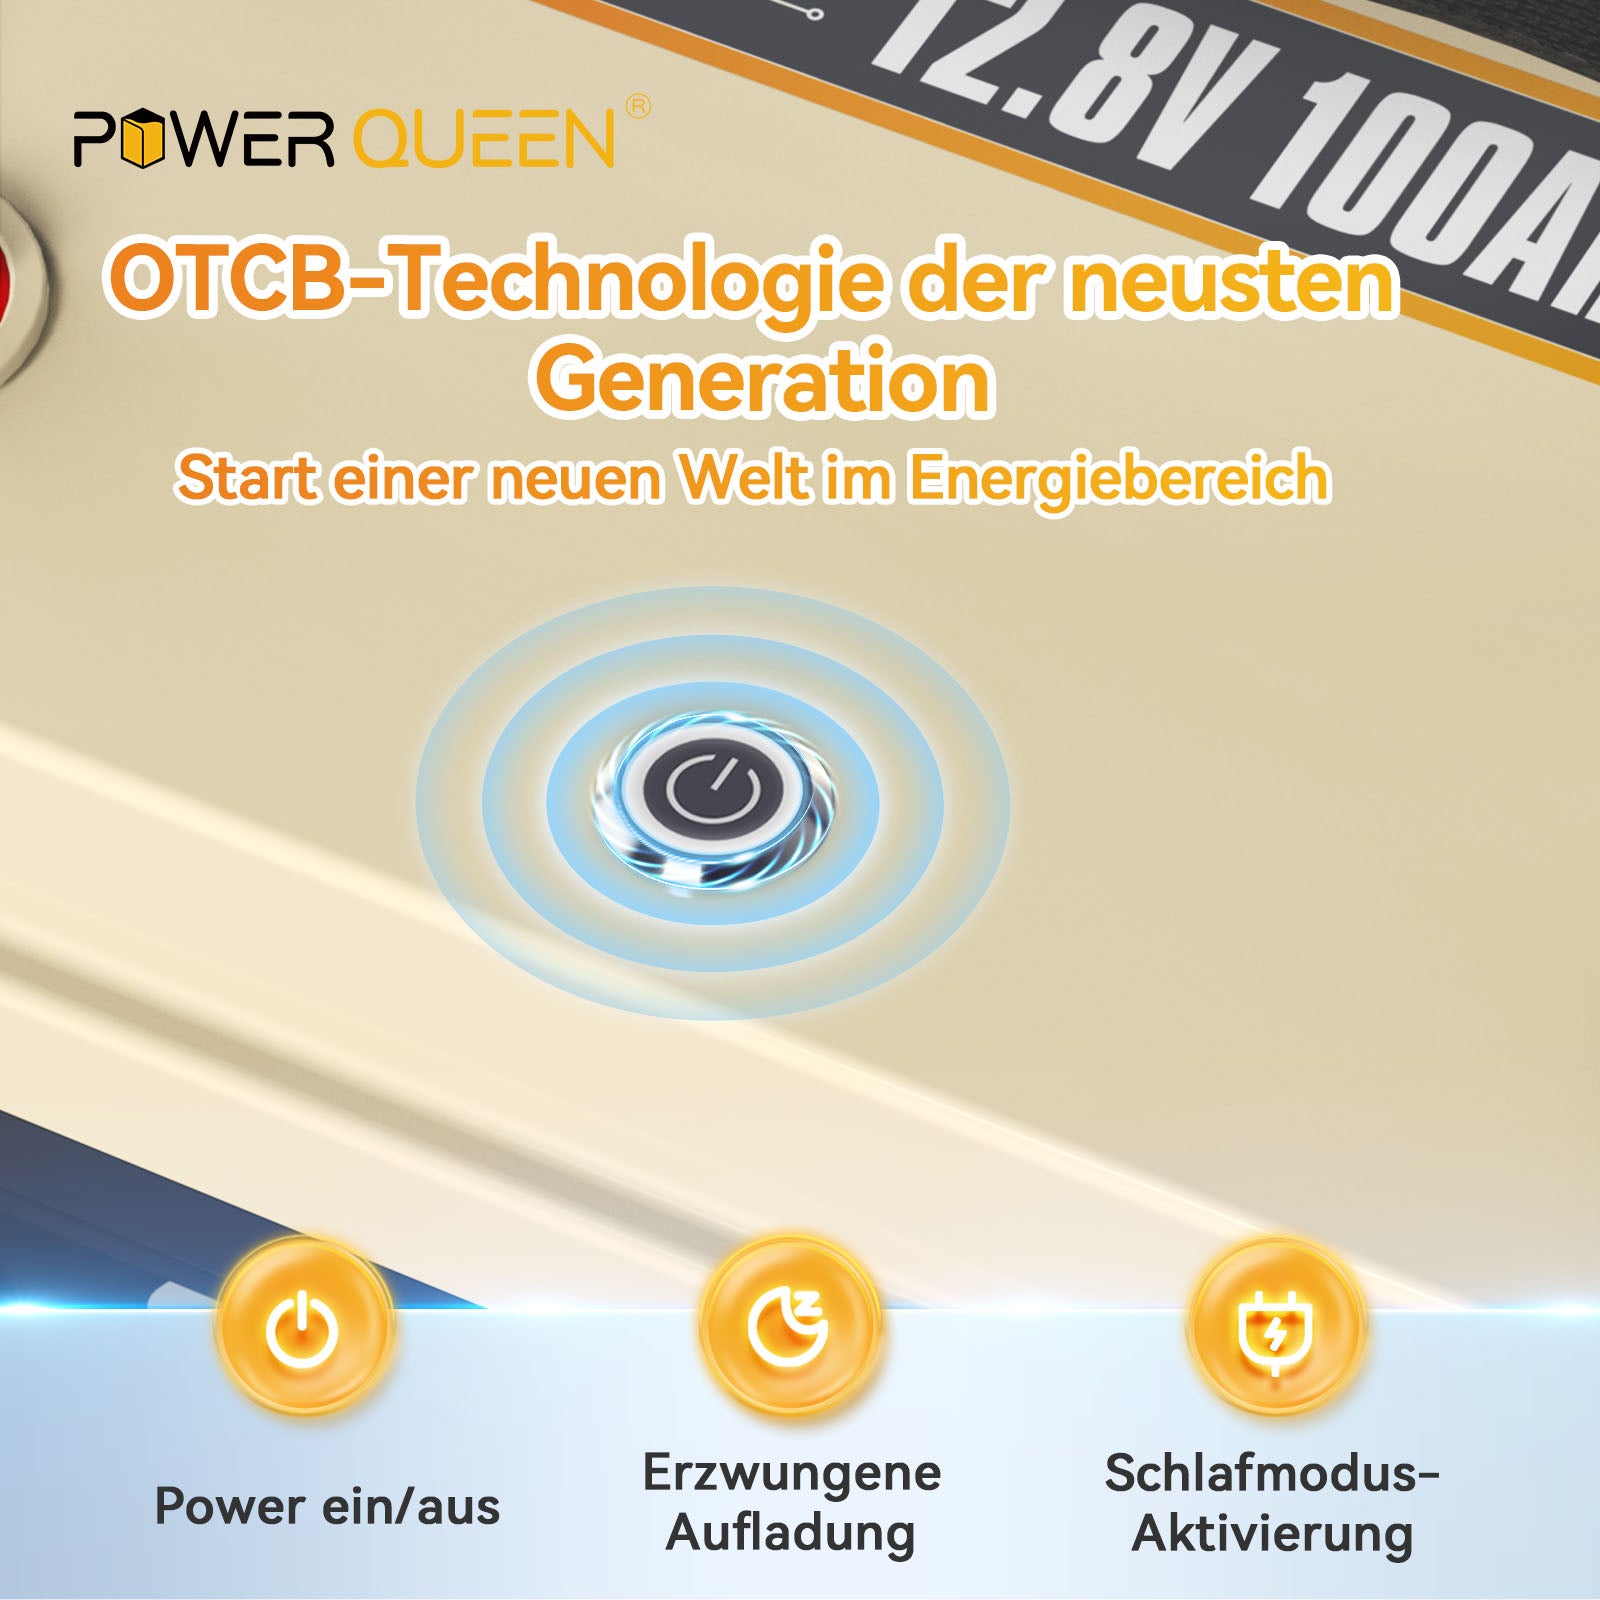 【0% Mwst.】Power Queen 12,8V 100Ah OTCB Smart LiFePO4-Akku, eingebautes 100A BMS